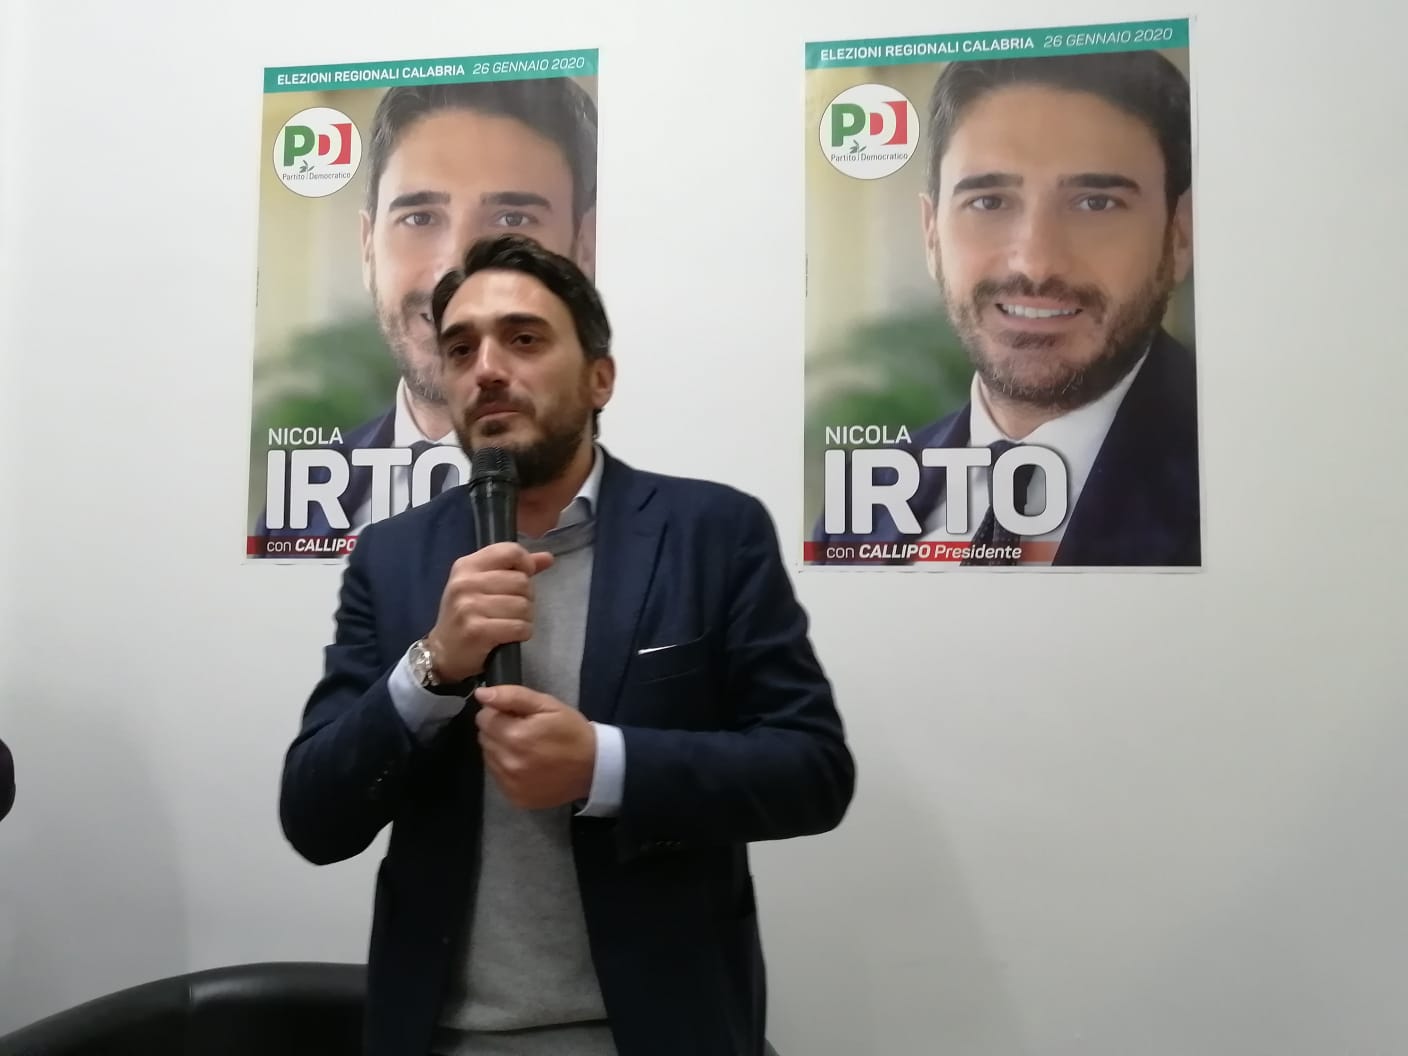 Regionali Calabria, chi è Nicola Irto candidato della Pd a Reggio